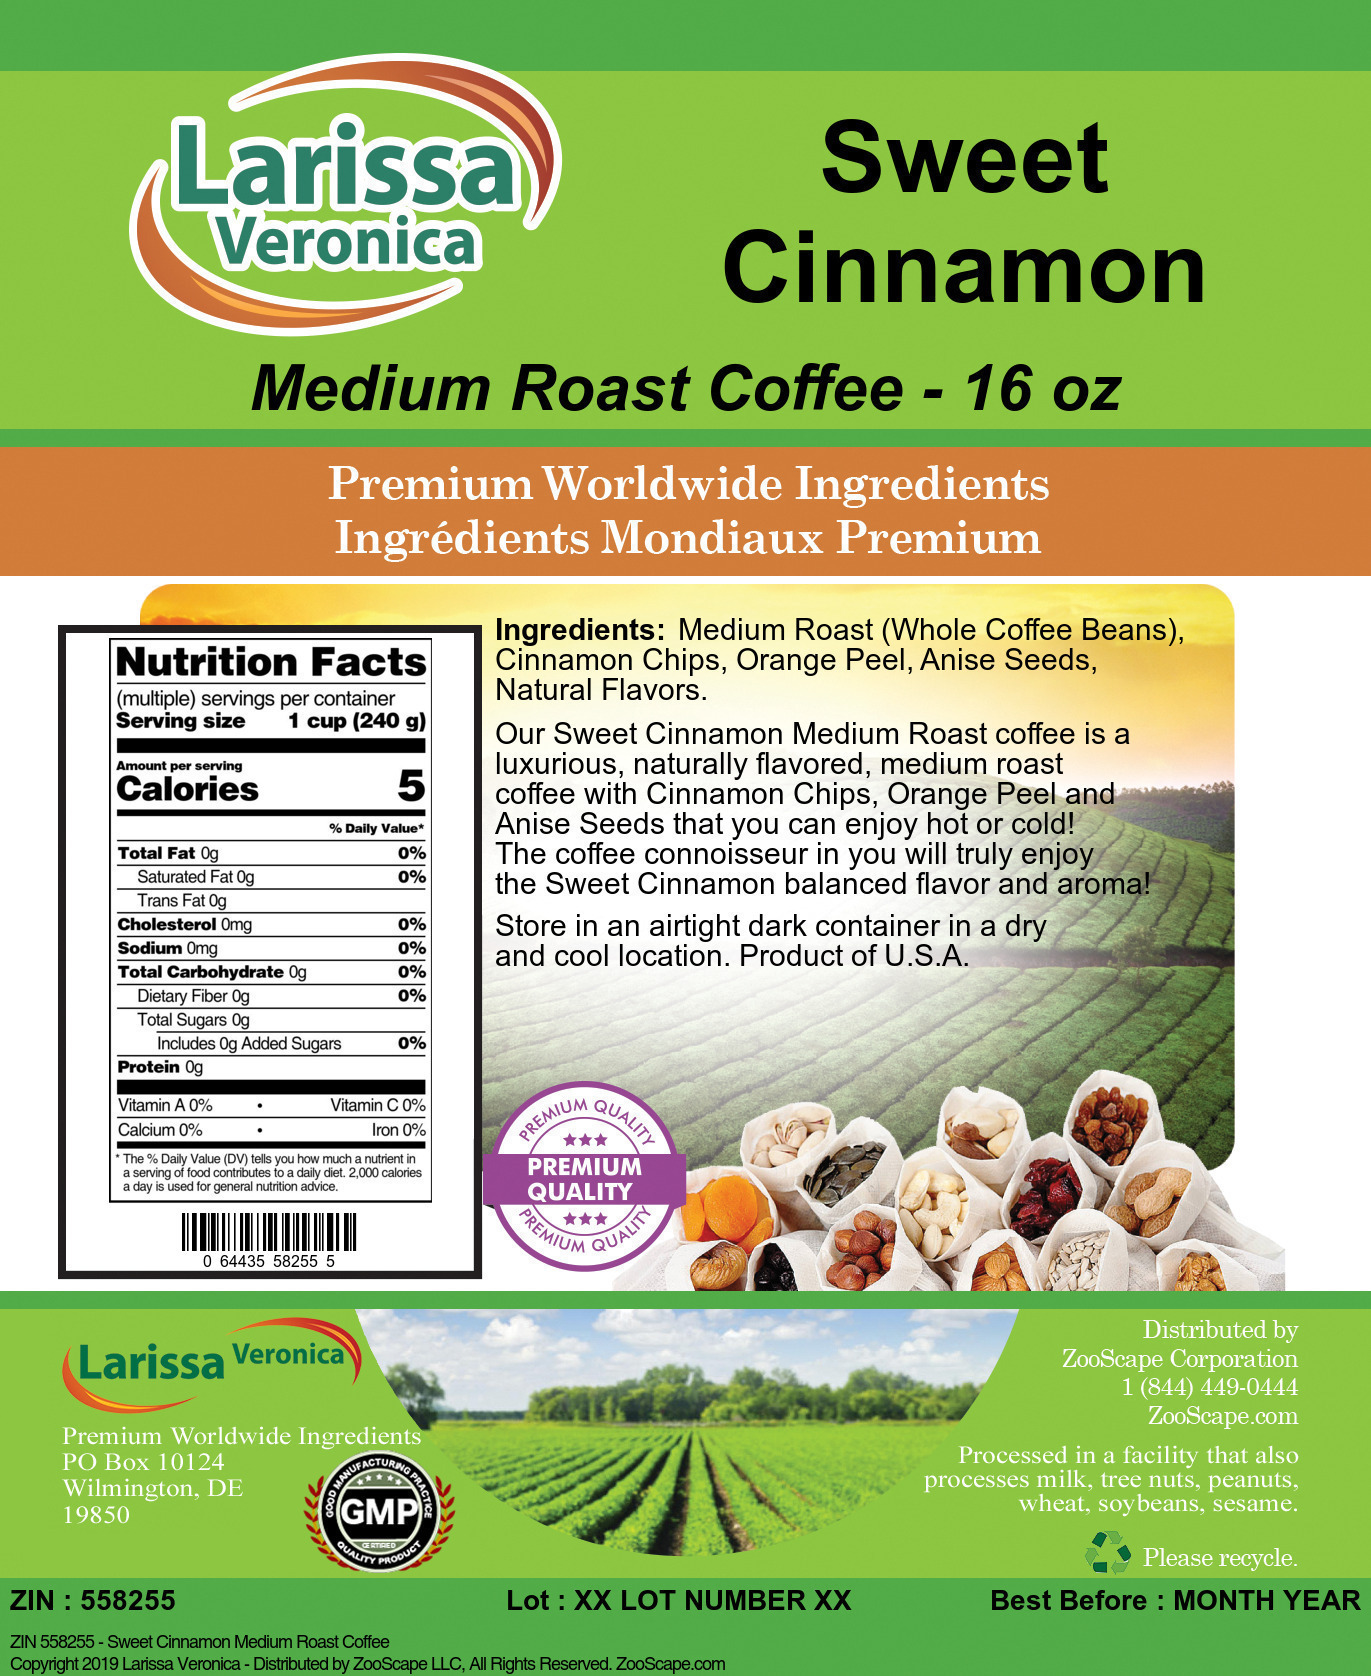 Sweet Cinnamon Medium Roast Coffee - Label